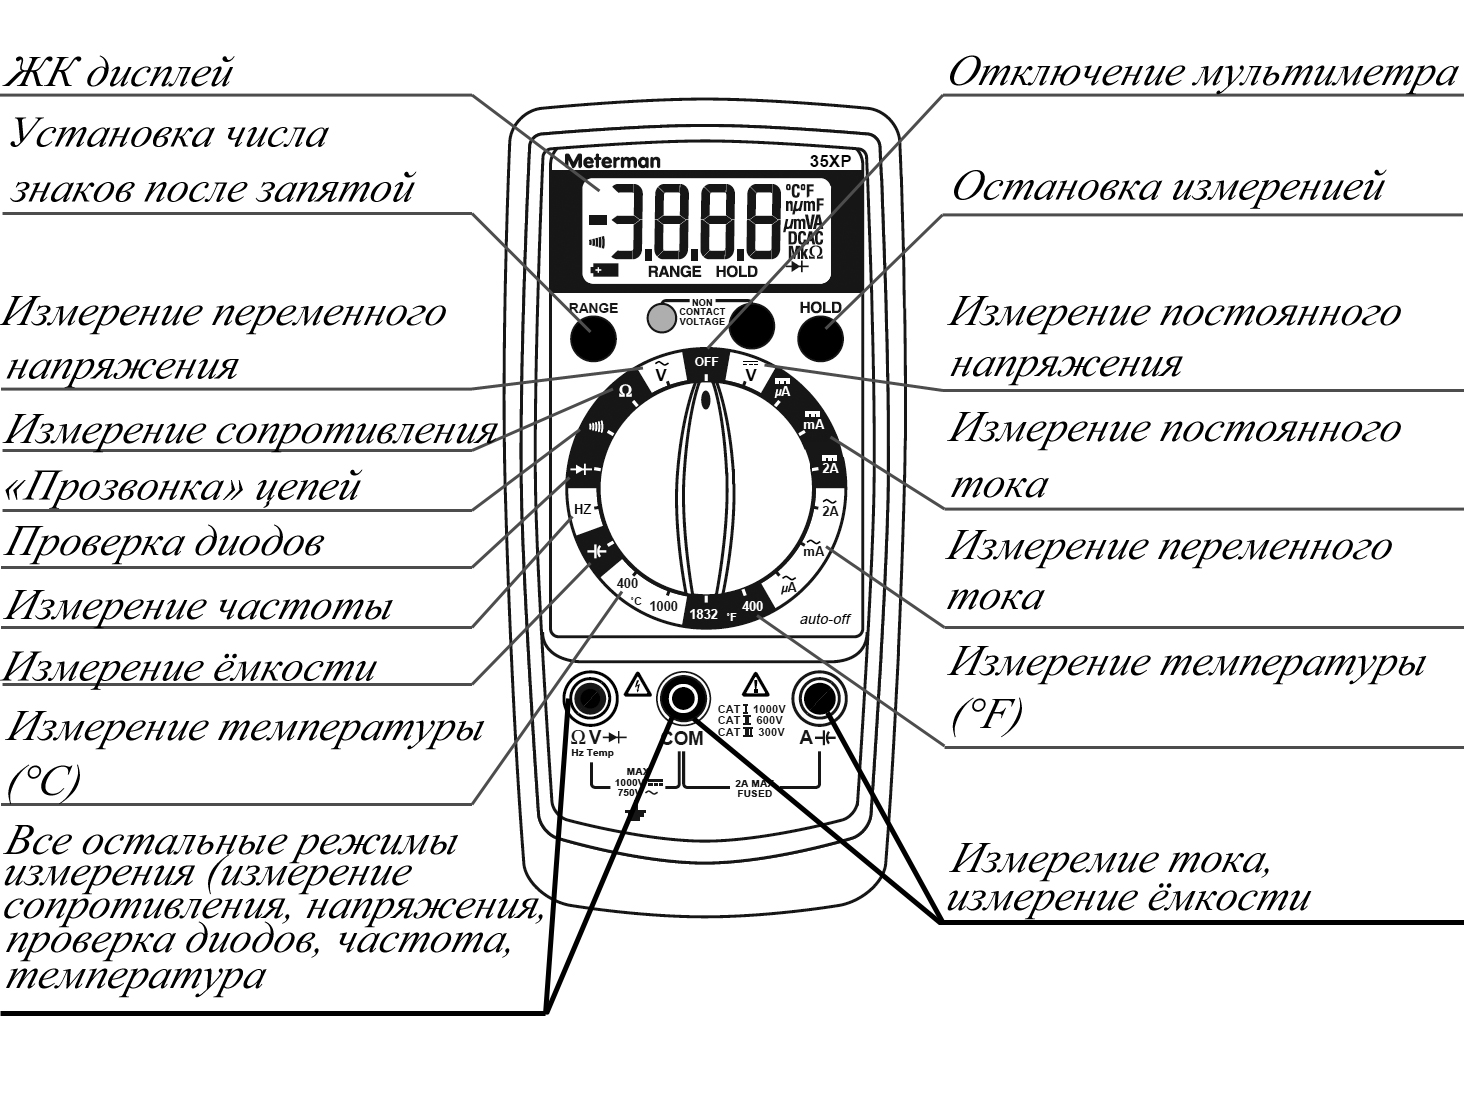 Инструкция по применению мультиметра dt830b: что можно измерить с помощью устройства